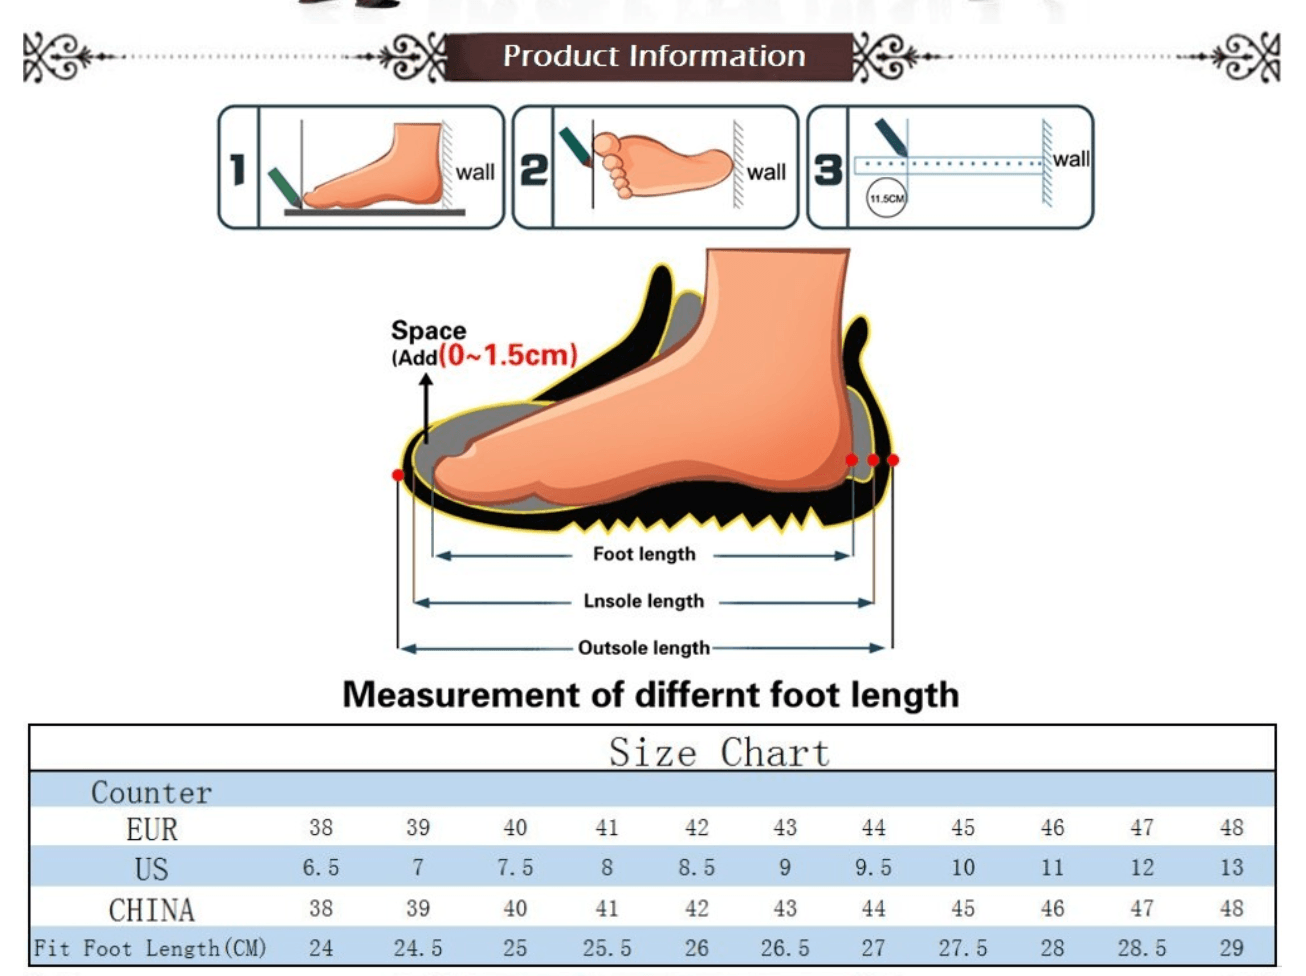 Summer Sandals - Men Leather Classic Roman Sandals - Outdoor Beach Flip Flops (MSC6)(F12) - Deals DejaVu